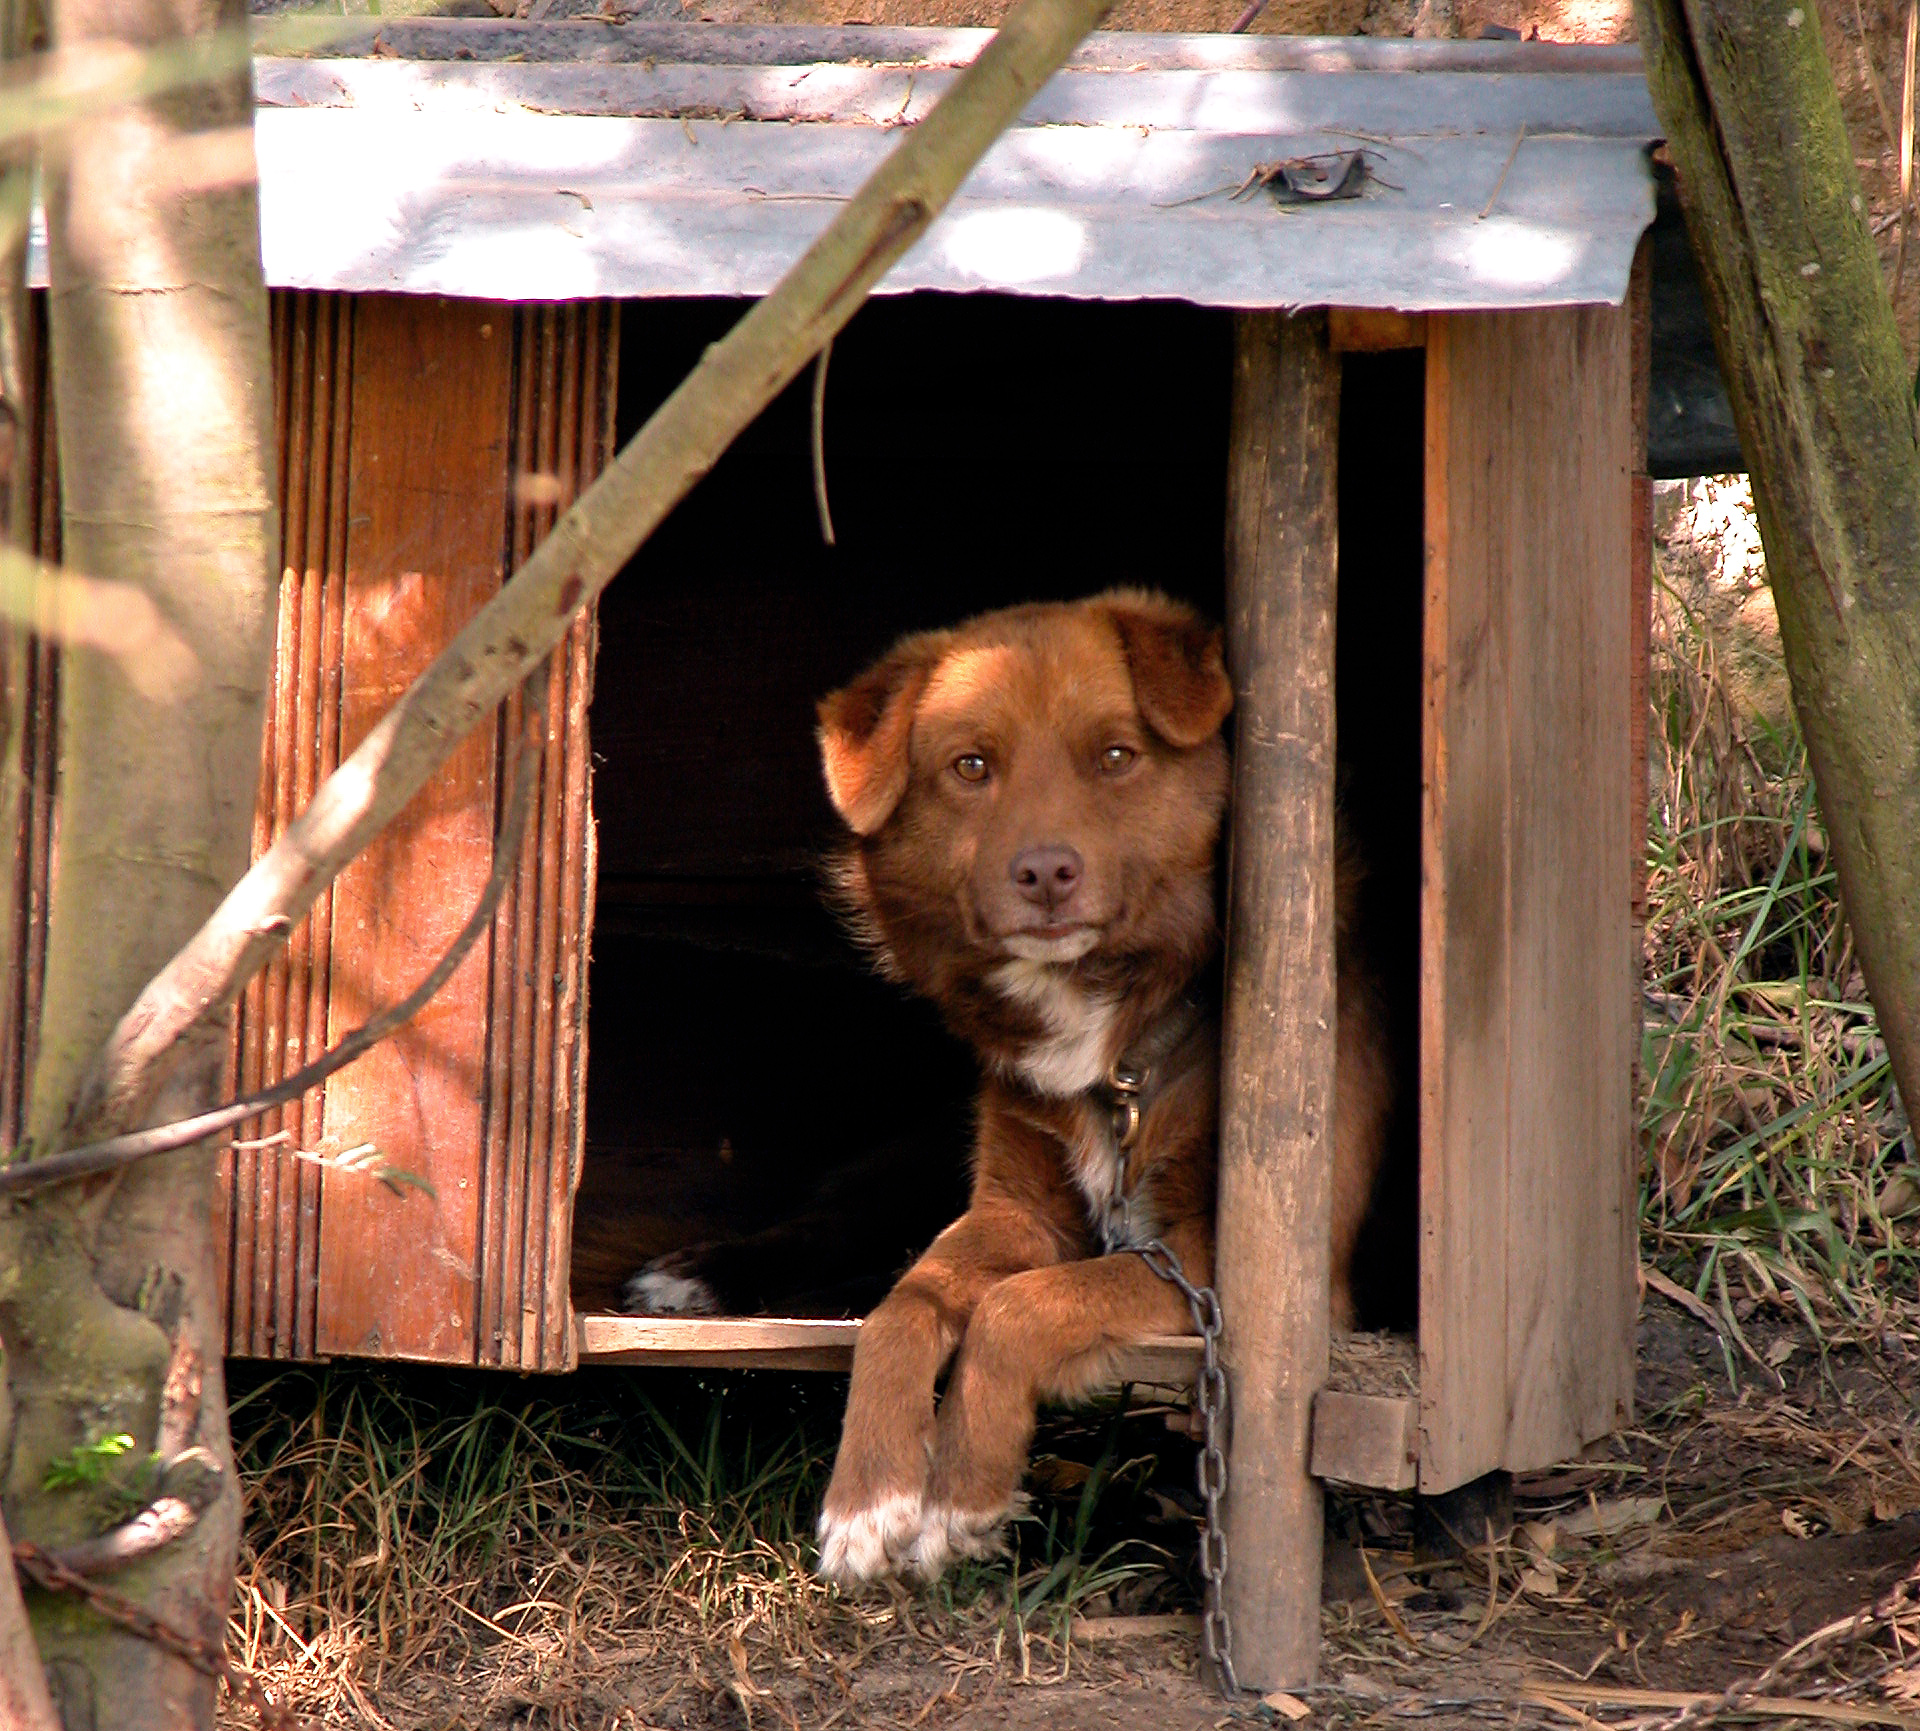 Дома появилась собака. Собака с конурой. Будка для собаки. Собака в будке на цепи. Собака в деревне.